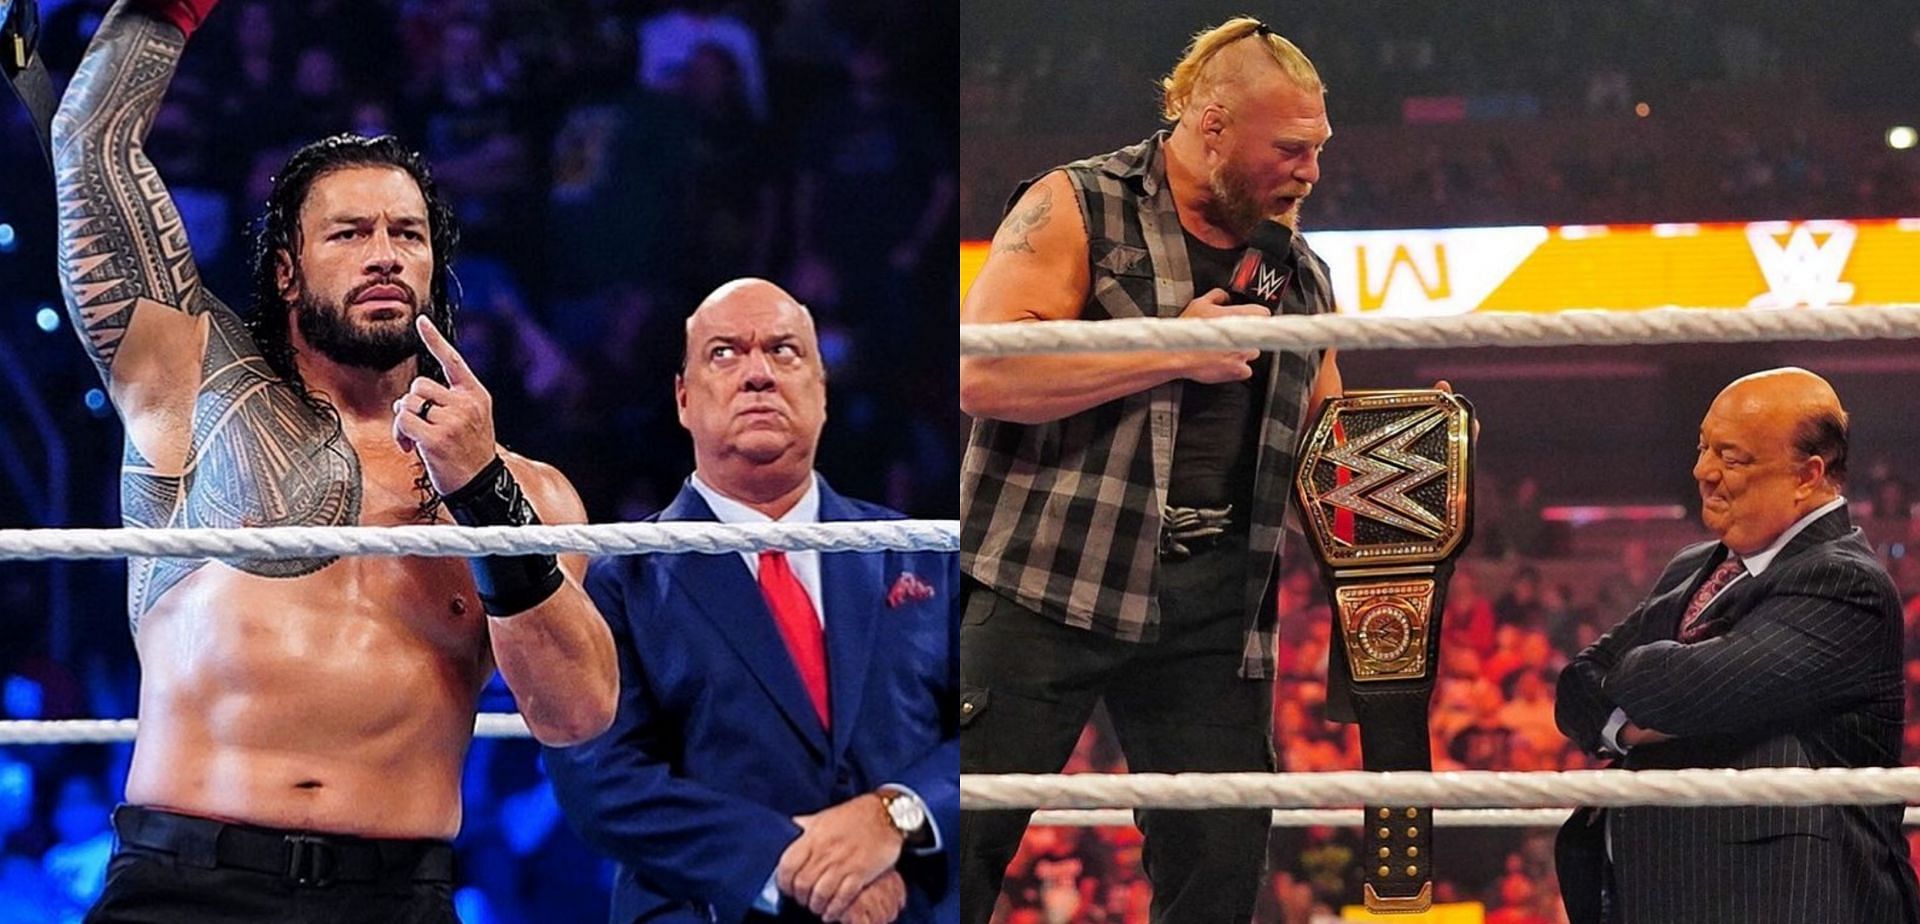 WWE में रोमन रेंस और ब्रॉक लैसनर की दुश्मनी सबसे ज्यादा चर्चा का विषय है